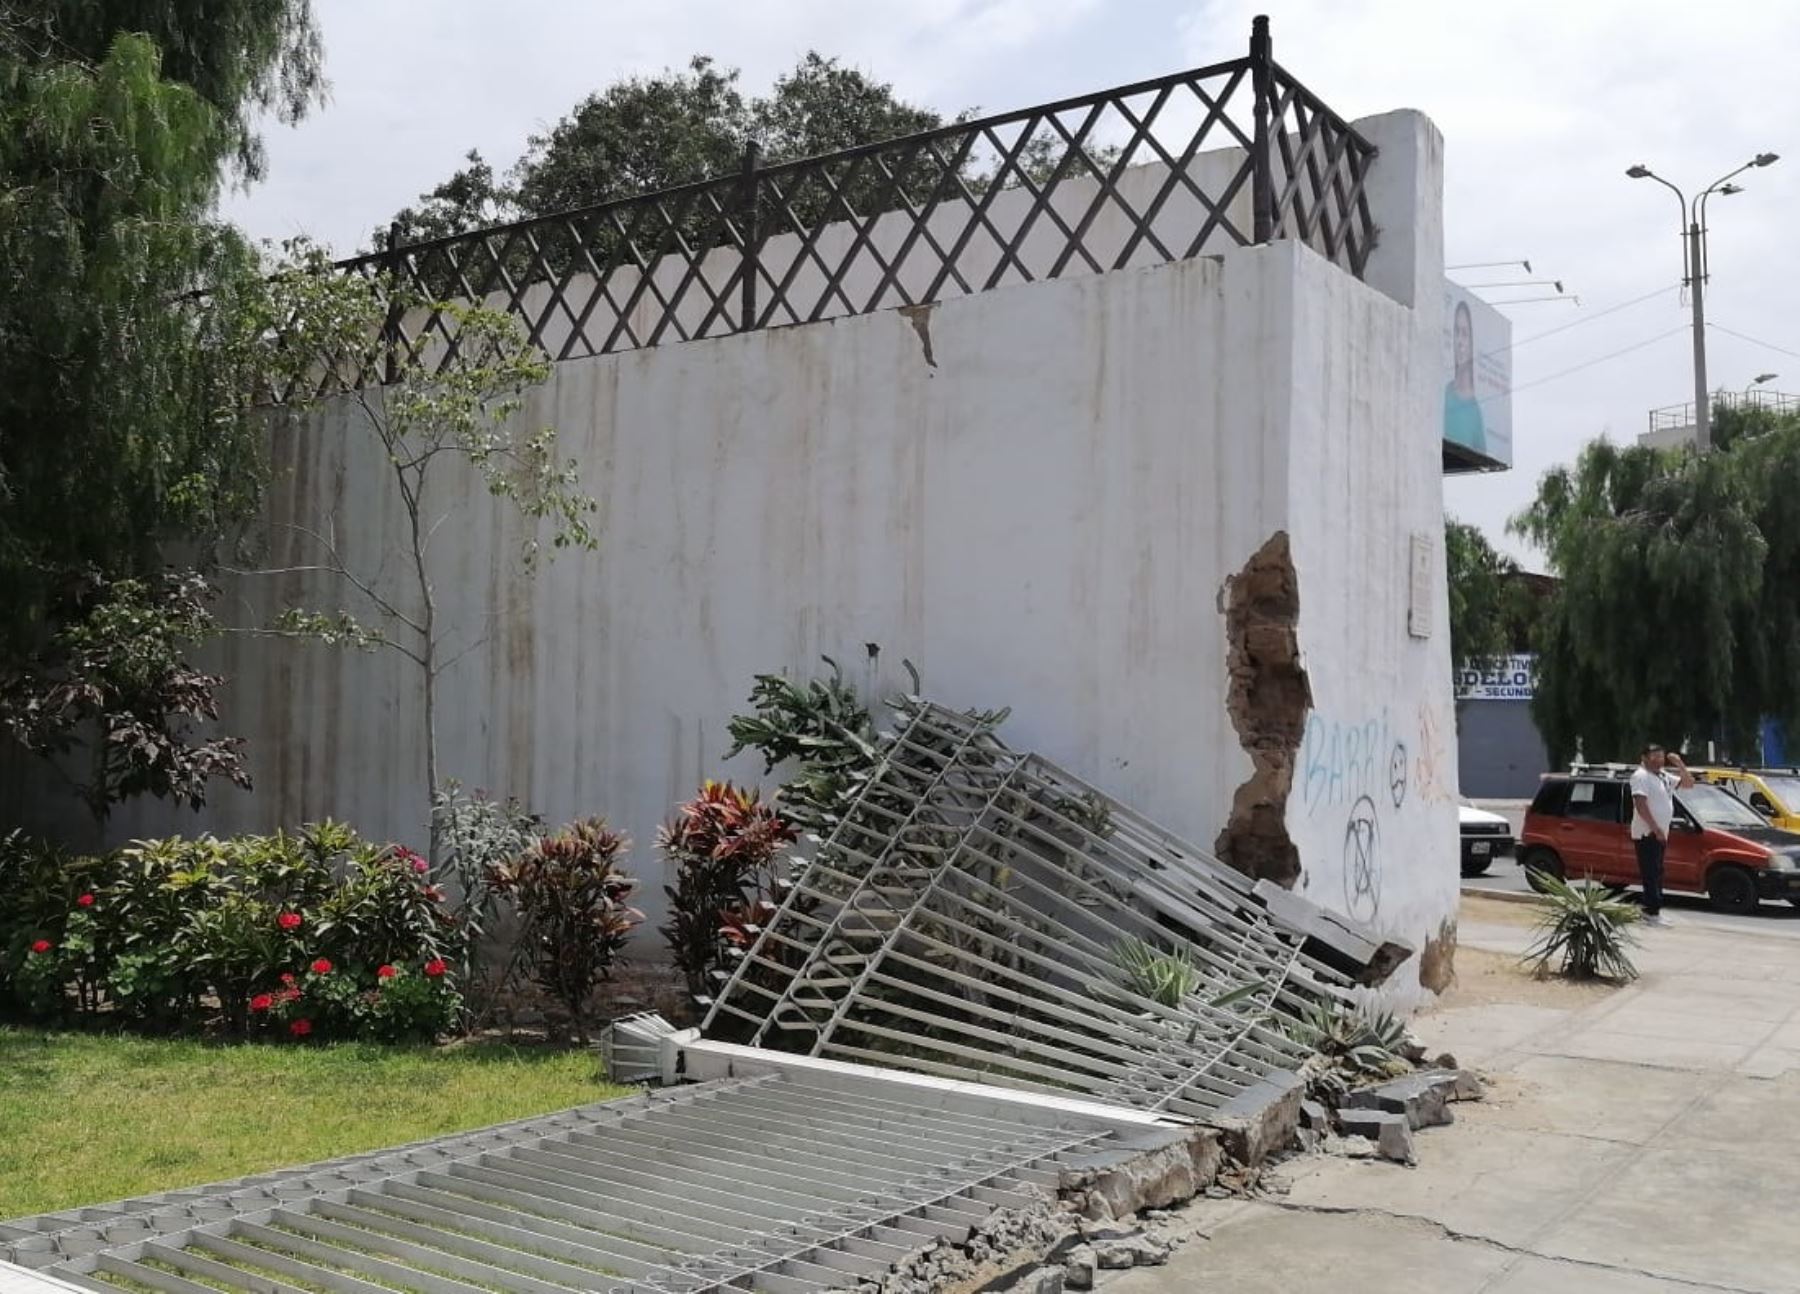 Con un cargador frontal retiraron la reja que protegía el Baluarte Herrera, dañando el muro que forma parte de la muralla colonial de Trujillo. Foto: Luis Puell